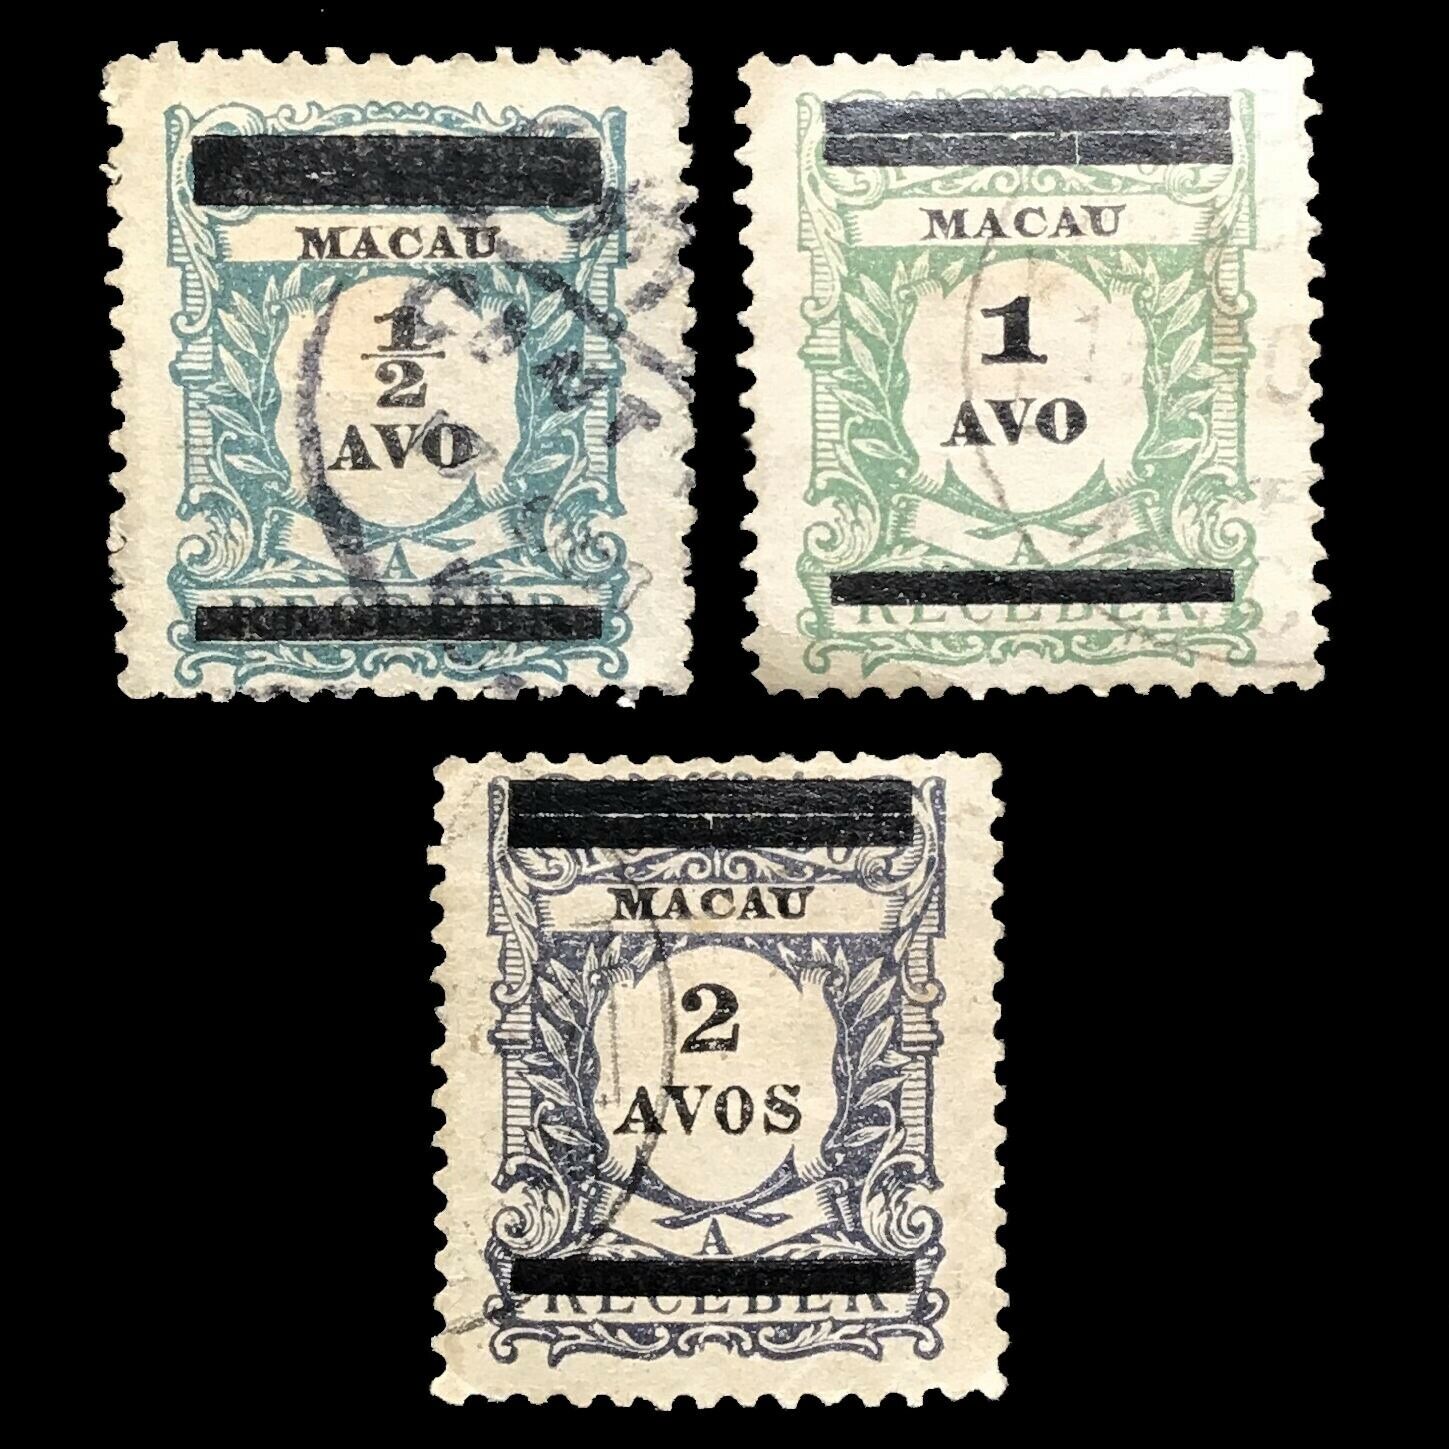 Macau 1910 Postage Due Overprinted Used & Hinged Postage (3) Stamp Full Set